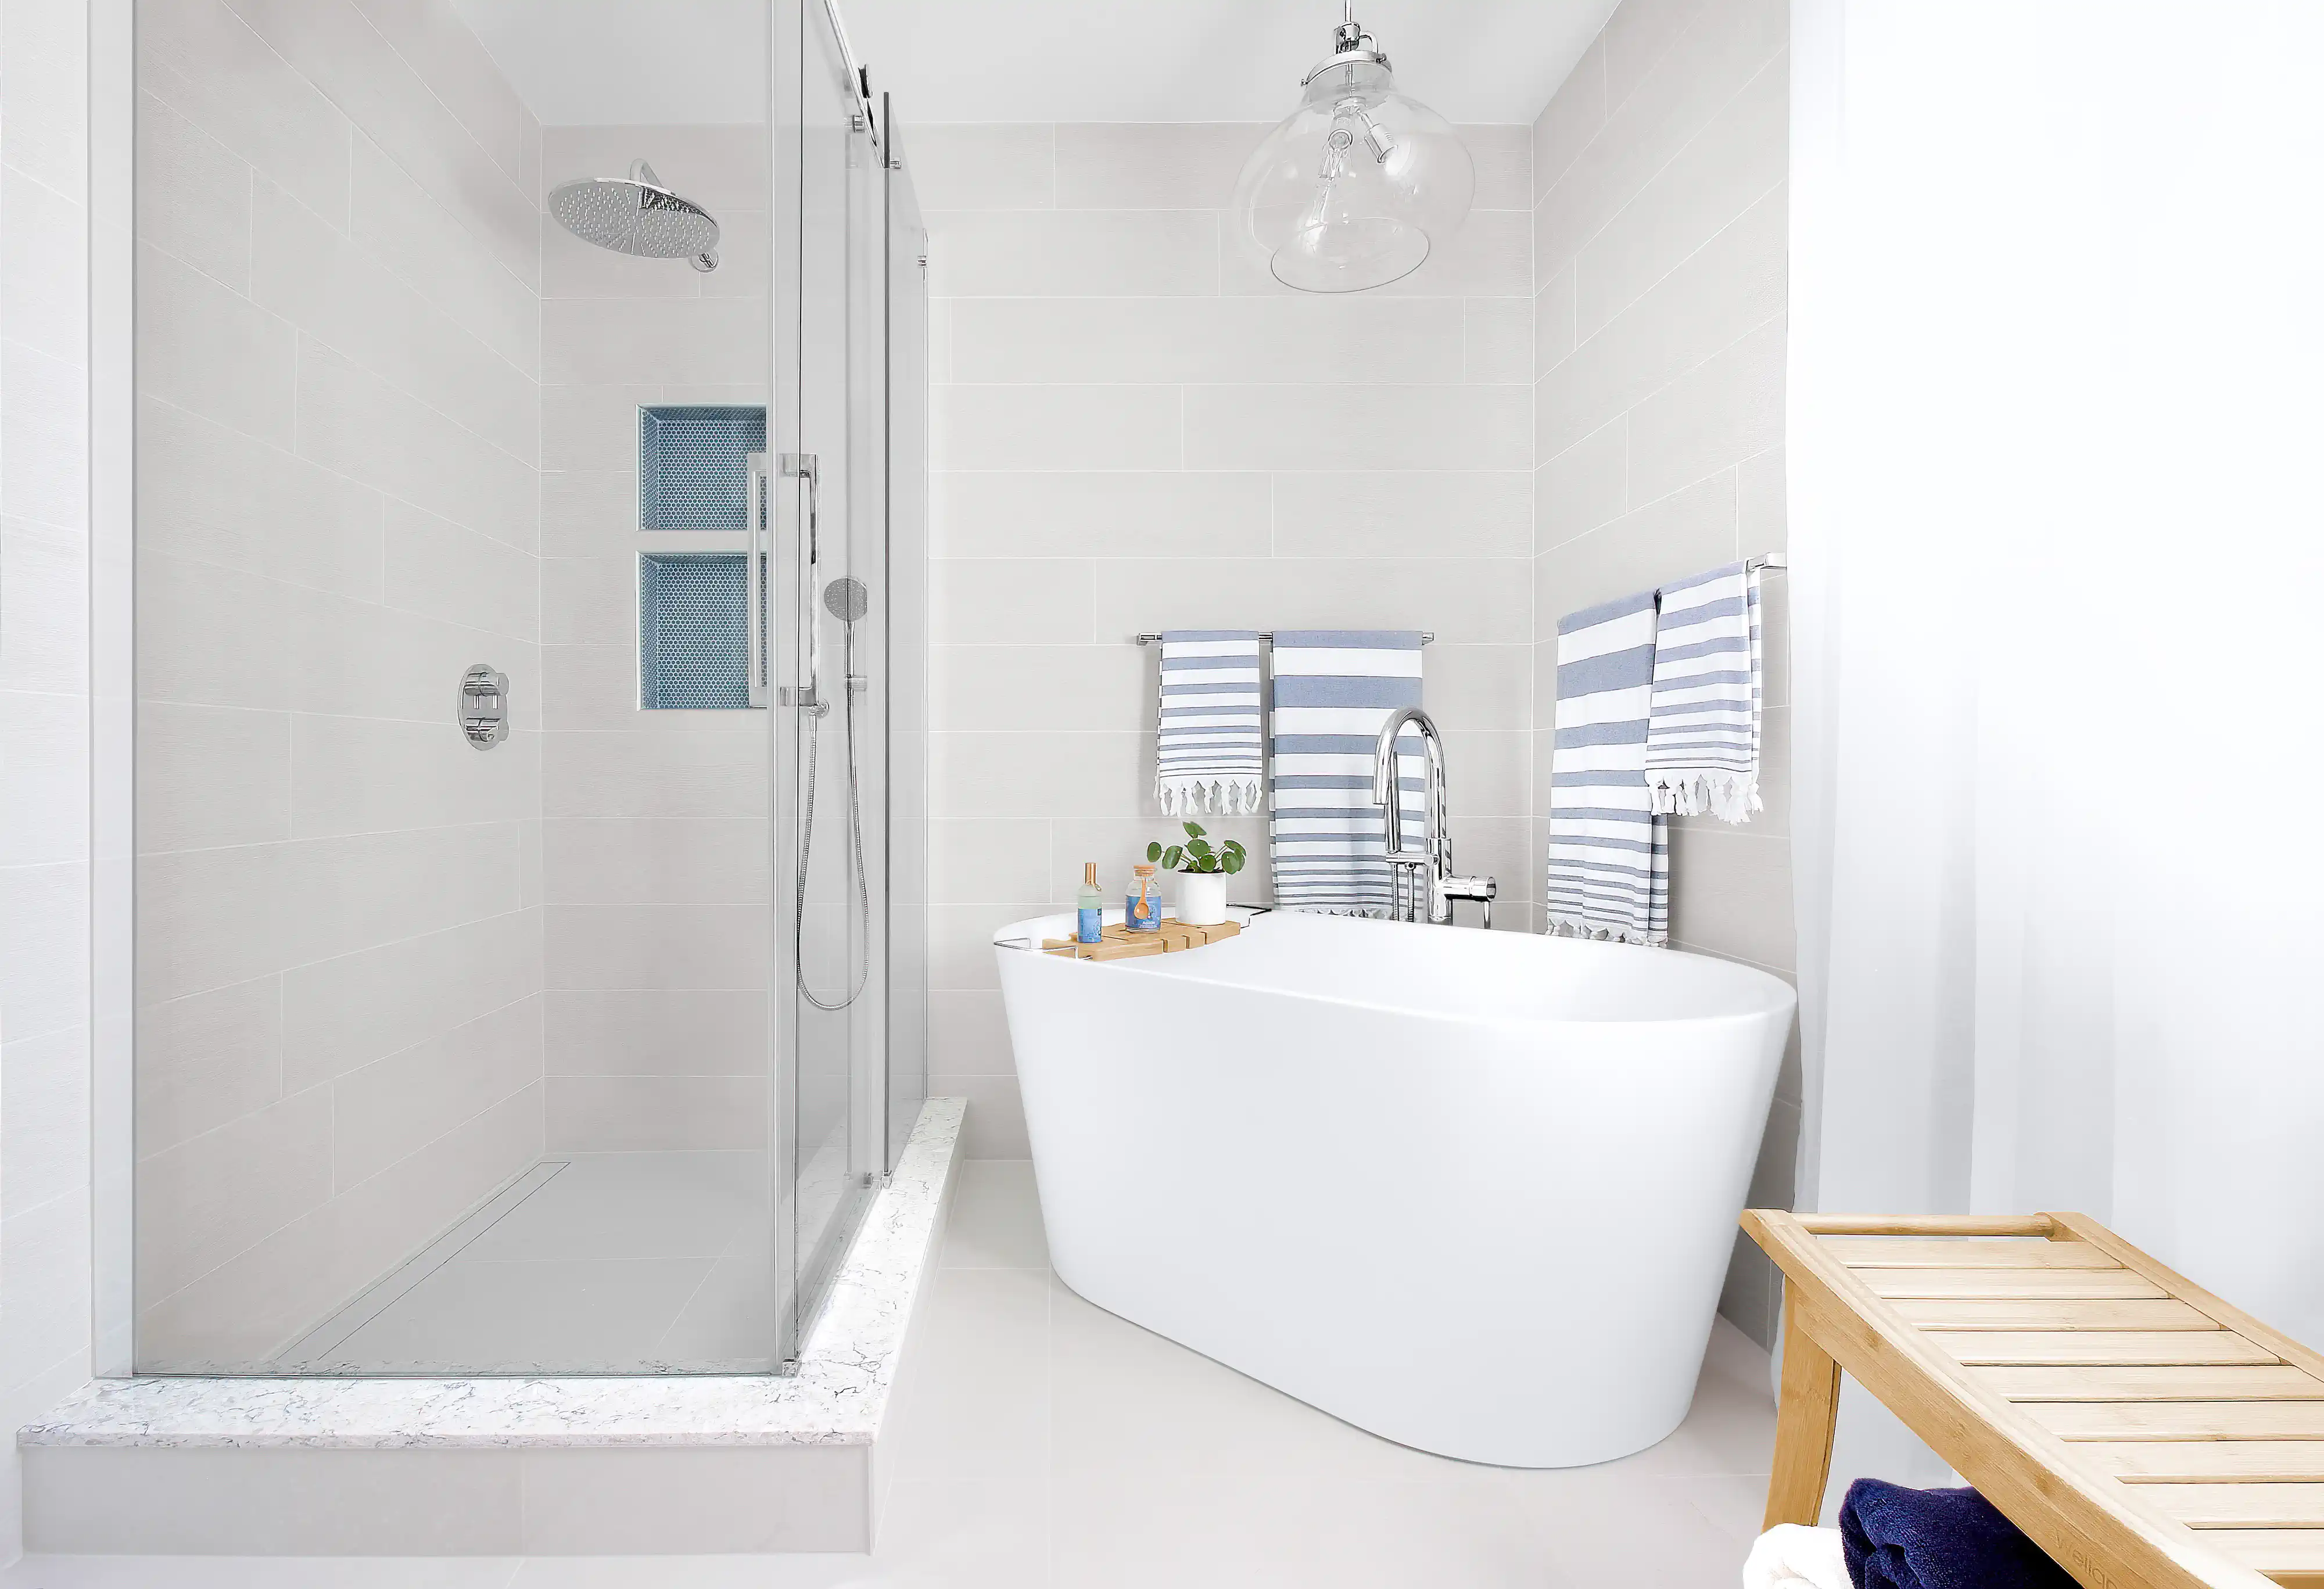 Une salle de bain moderne avec une baignoire blanche sur pieds et une douche vitrée, intérieur signé Sarah Brown Design